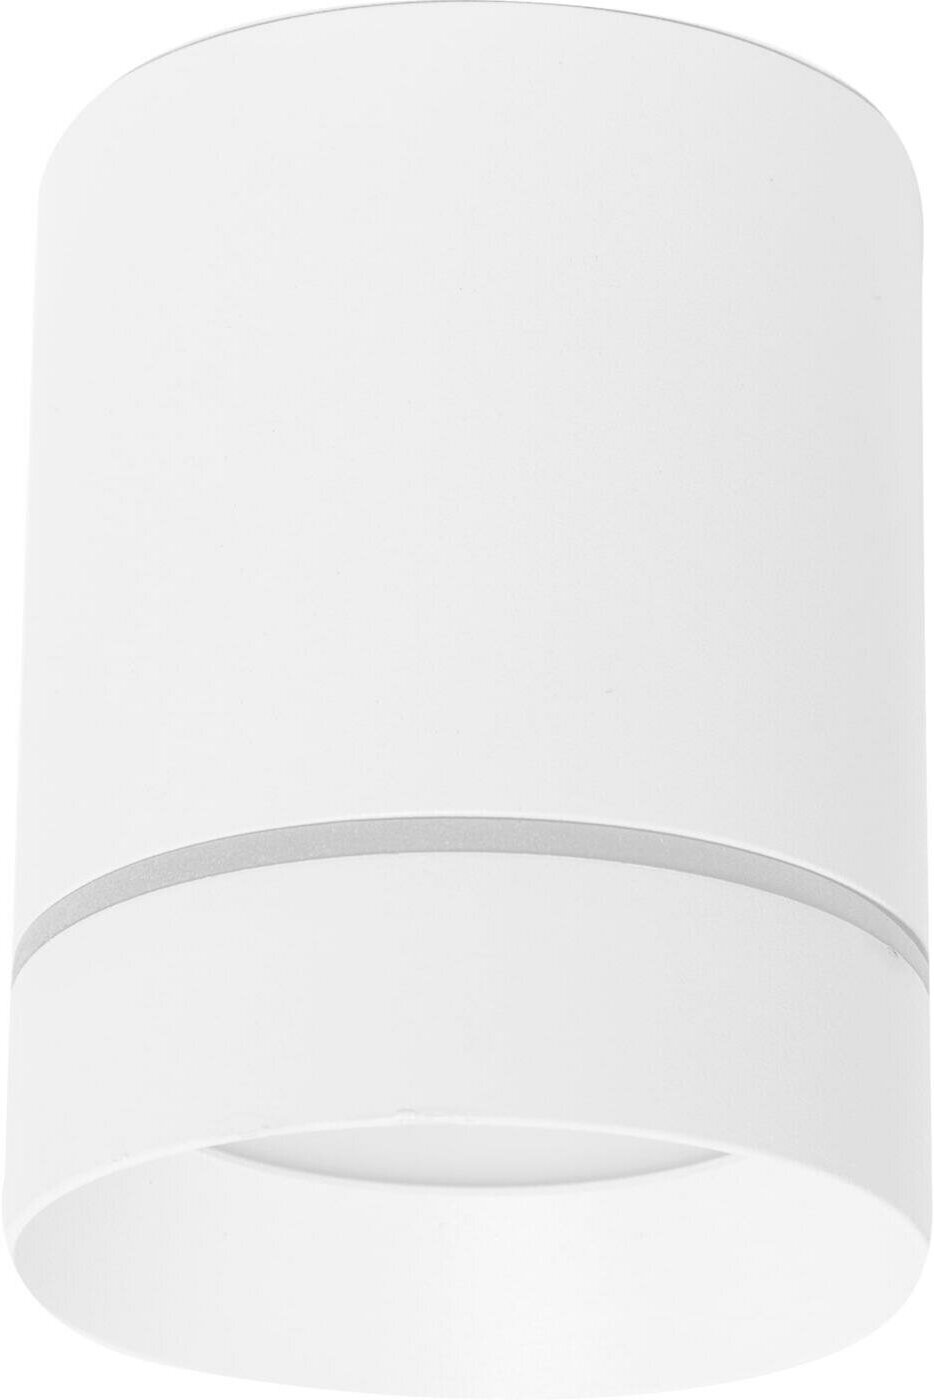 Светильник накладной светодиодный ГК Альянс DLR021, 9 Вт, 4200 К, цвет белый матовый, свет холодный белый - фотография № 8